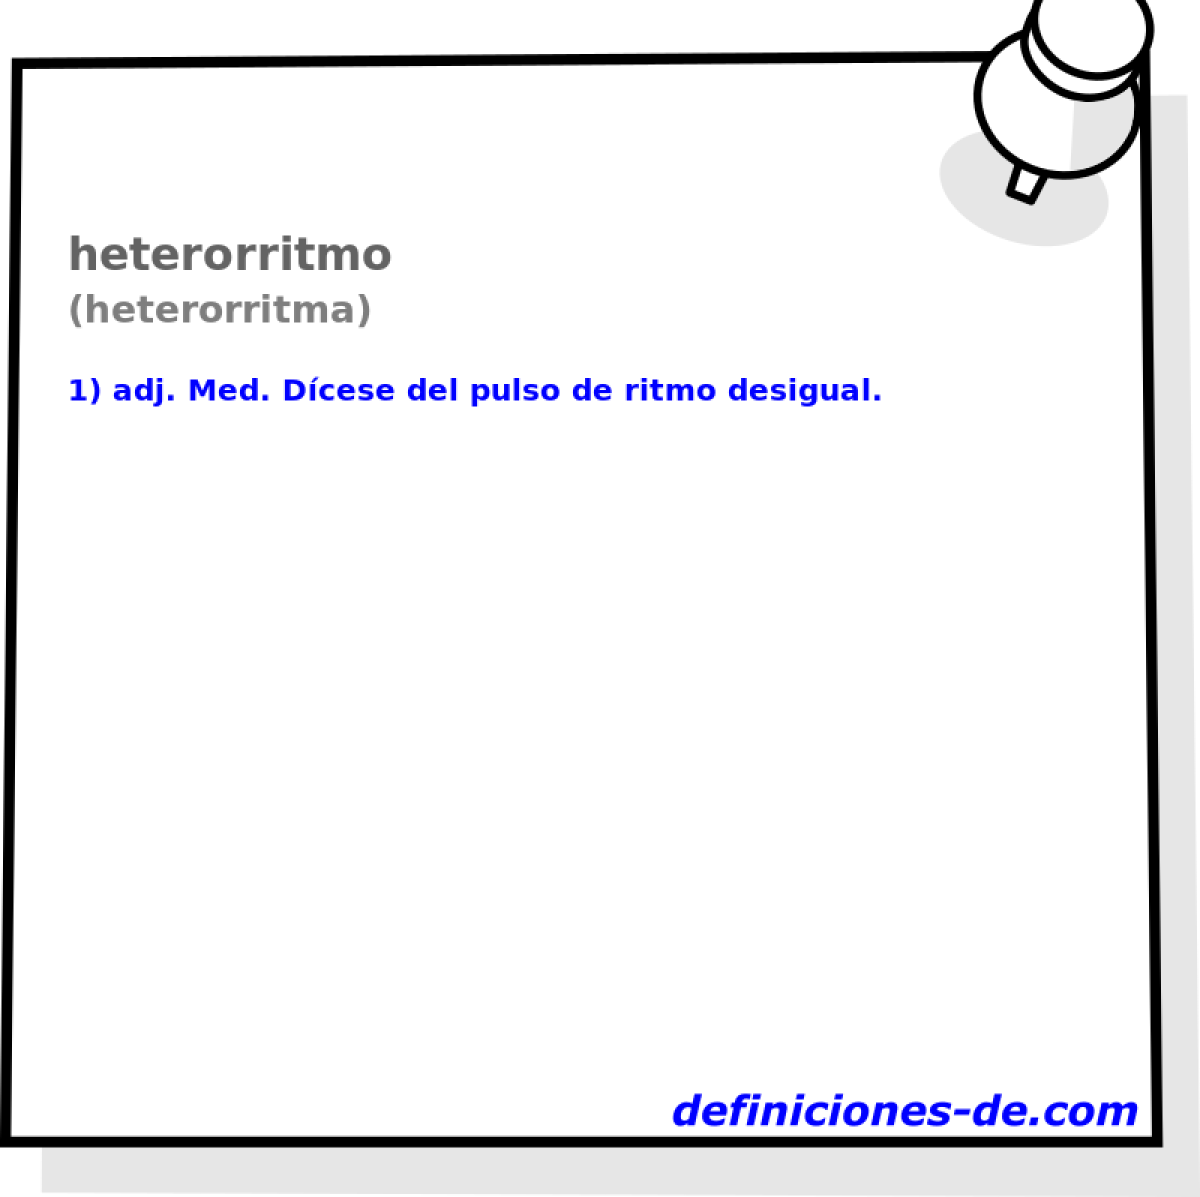 heterorritmo (heterorritma)